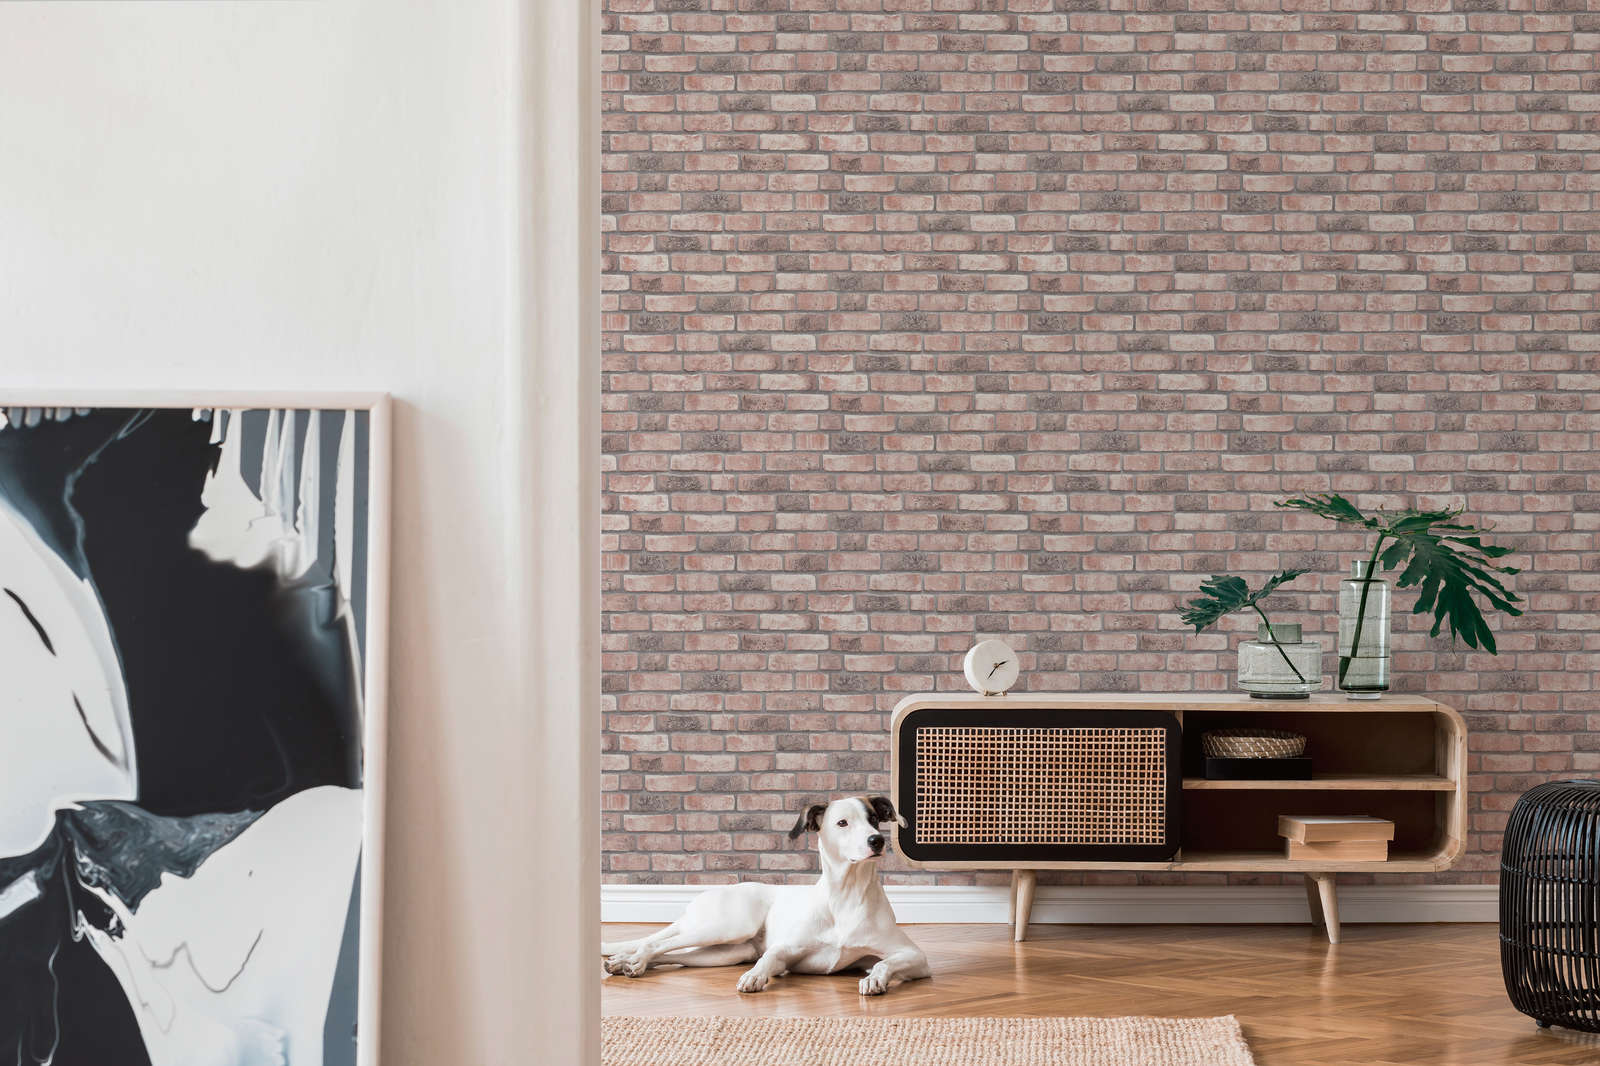             Wallpaper with brick motif - grey, beige
        